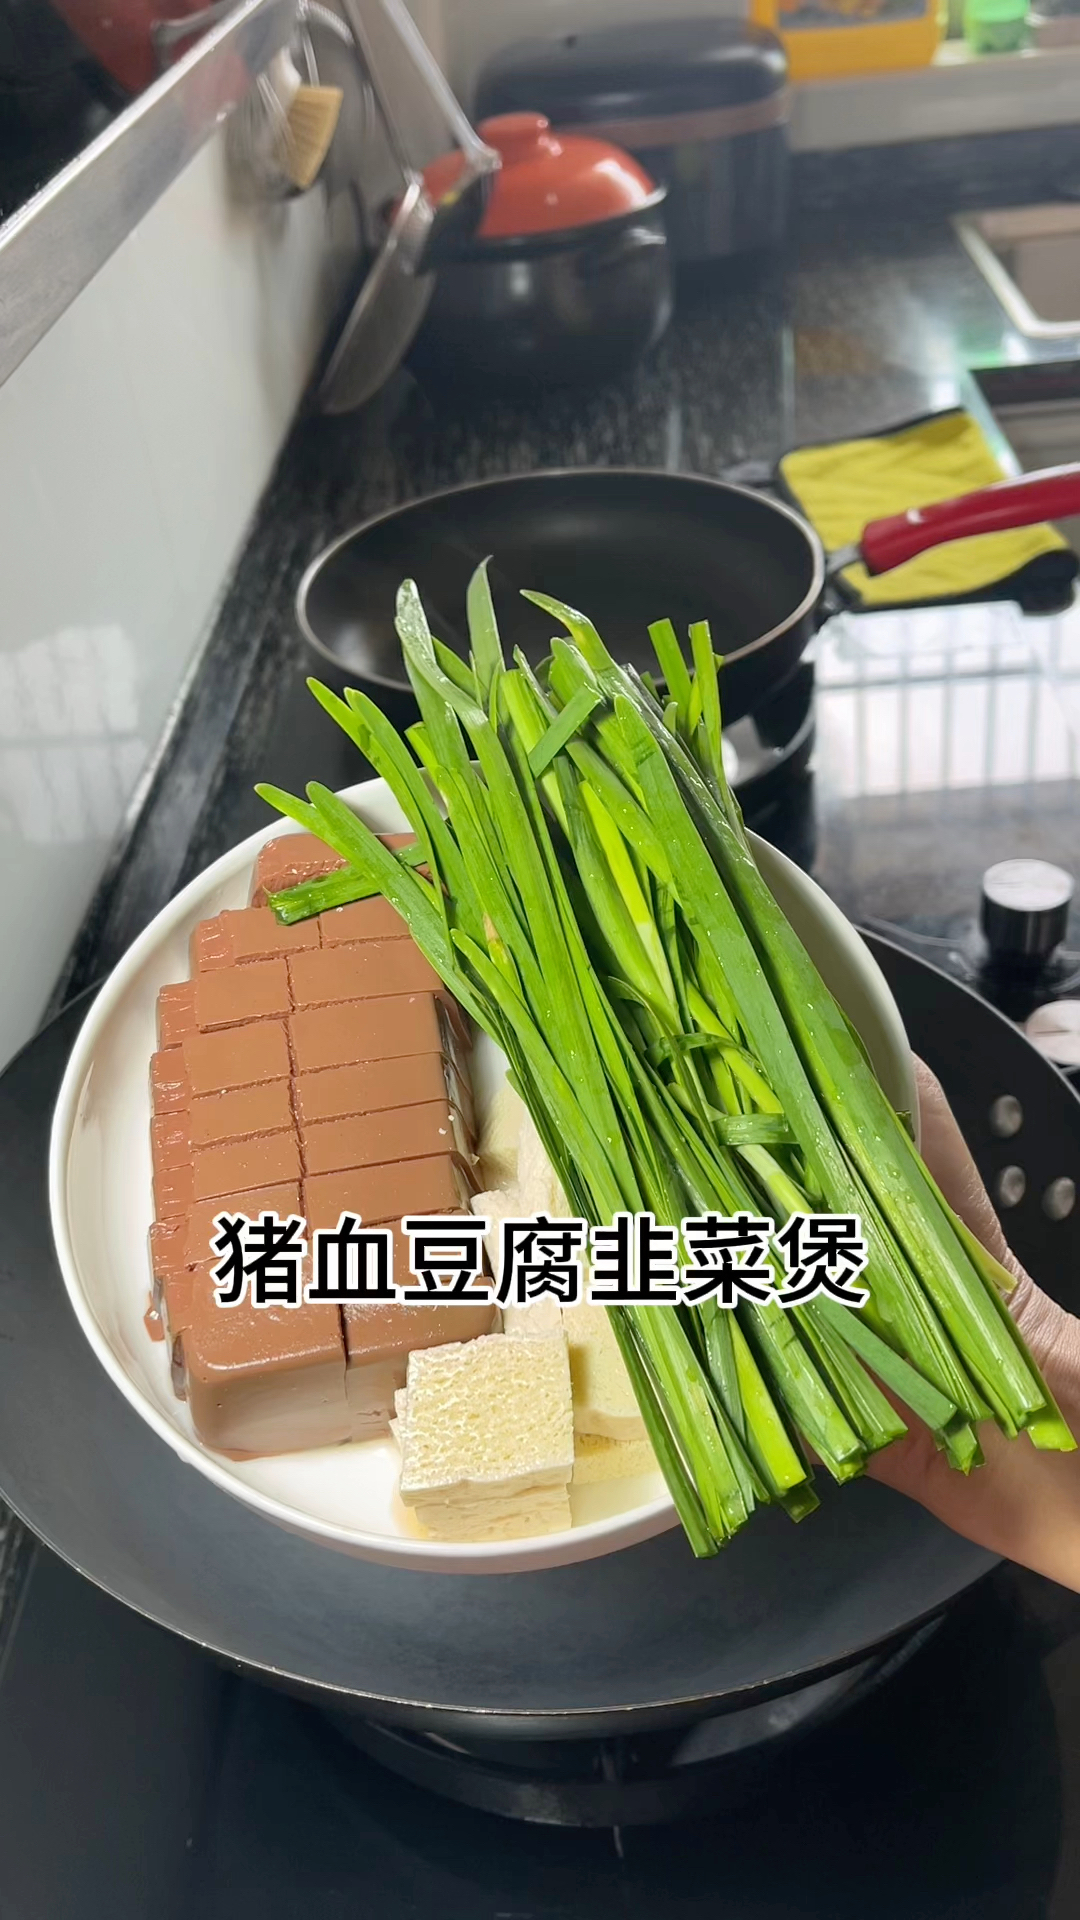 猪血豆腐韭菜煲